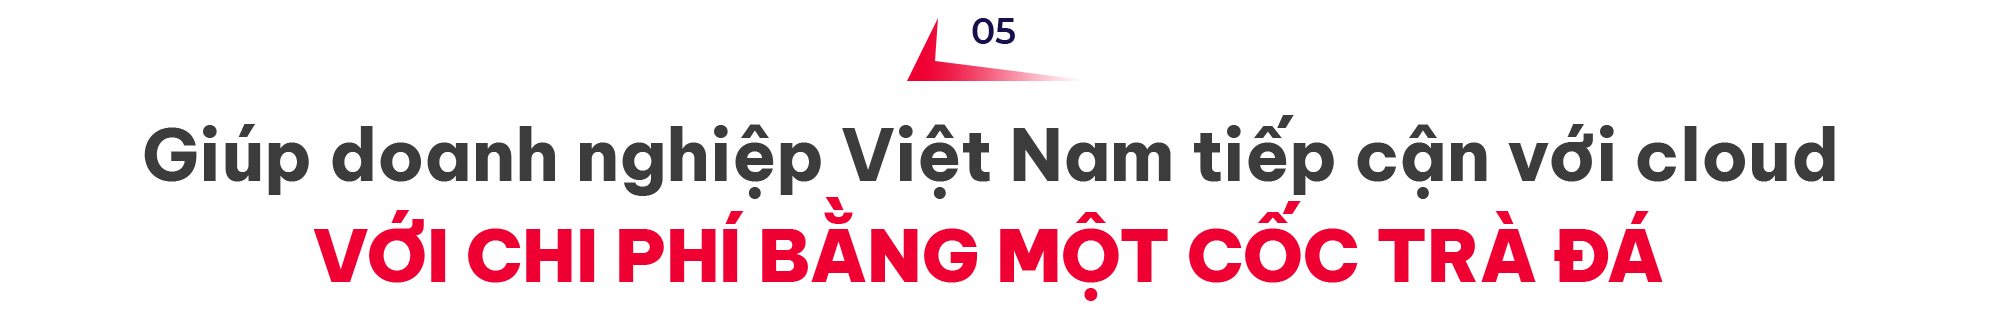 CEO Hoàng Văn Ngọc: Viettel IDC luôn nỗ lực trở thành phiên bản tốt nhất của chính mình - Ảnh 12.